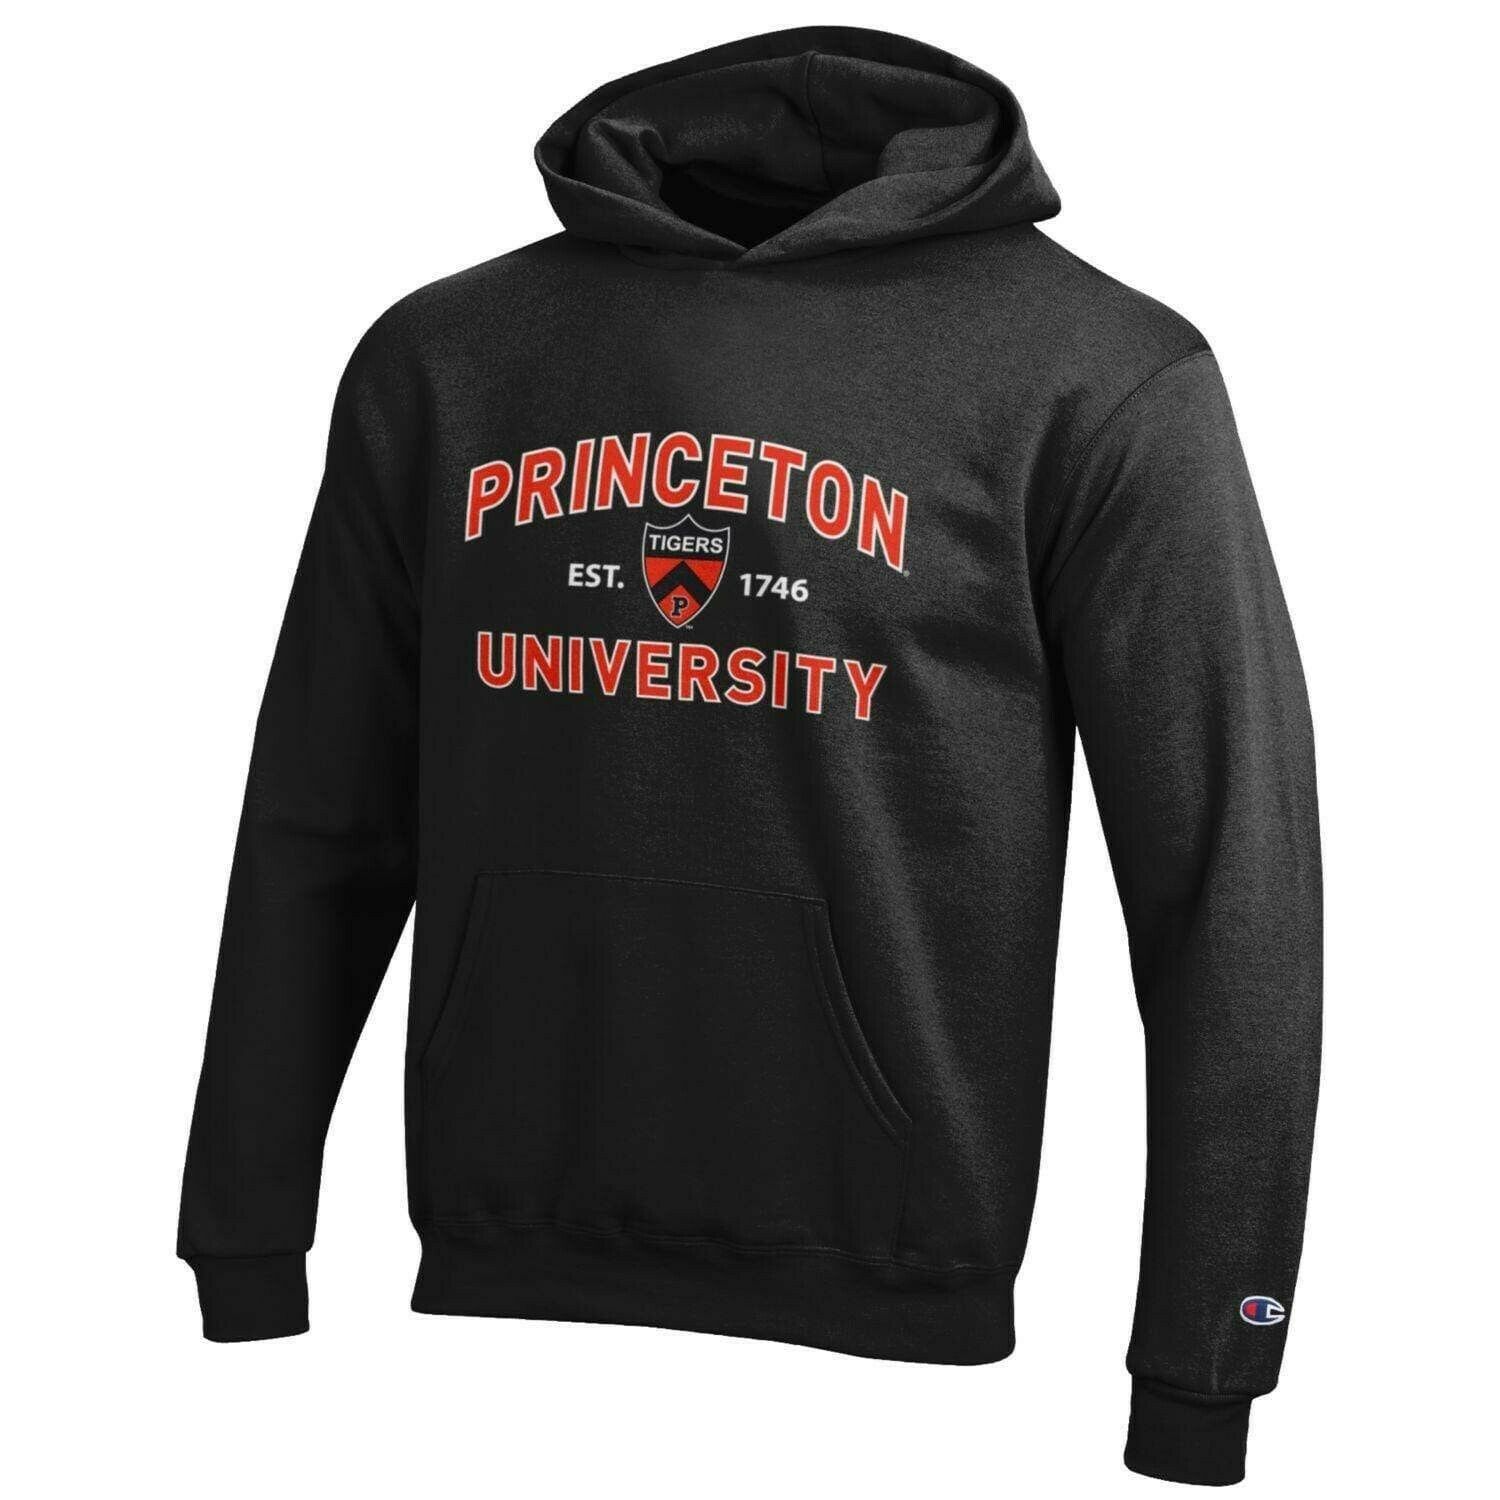 Princeton University Champion Youth Hoody